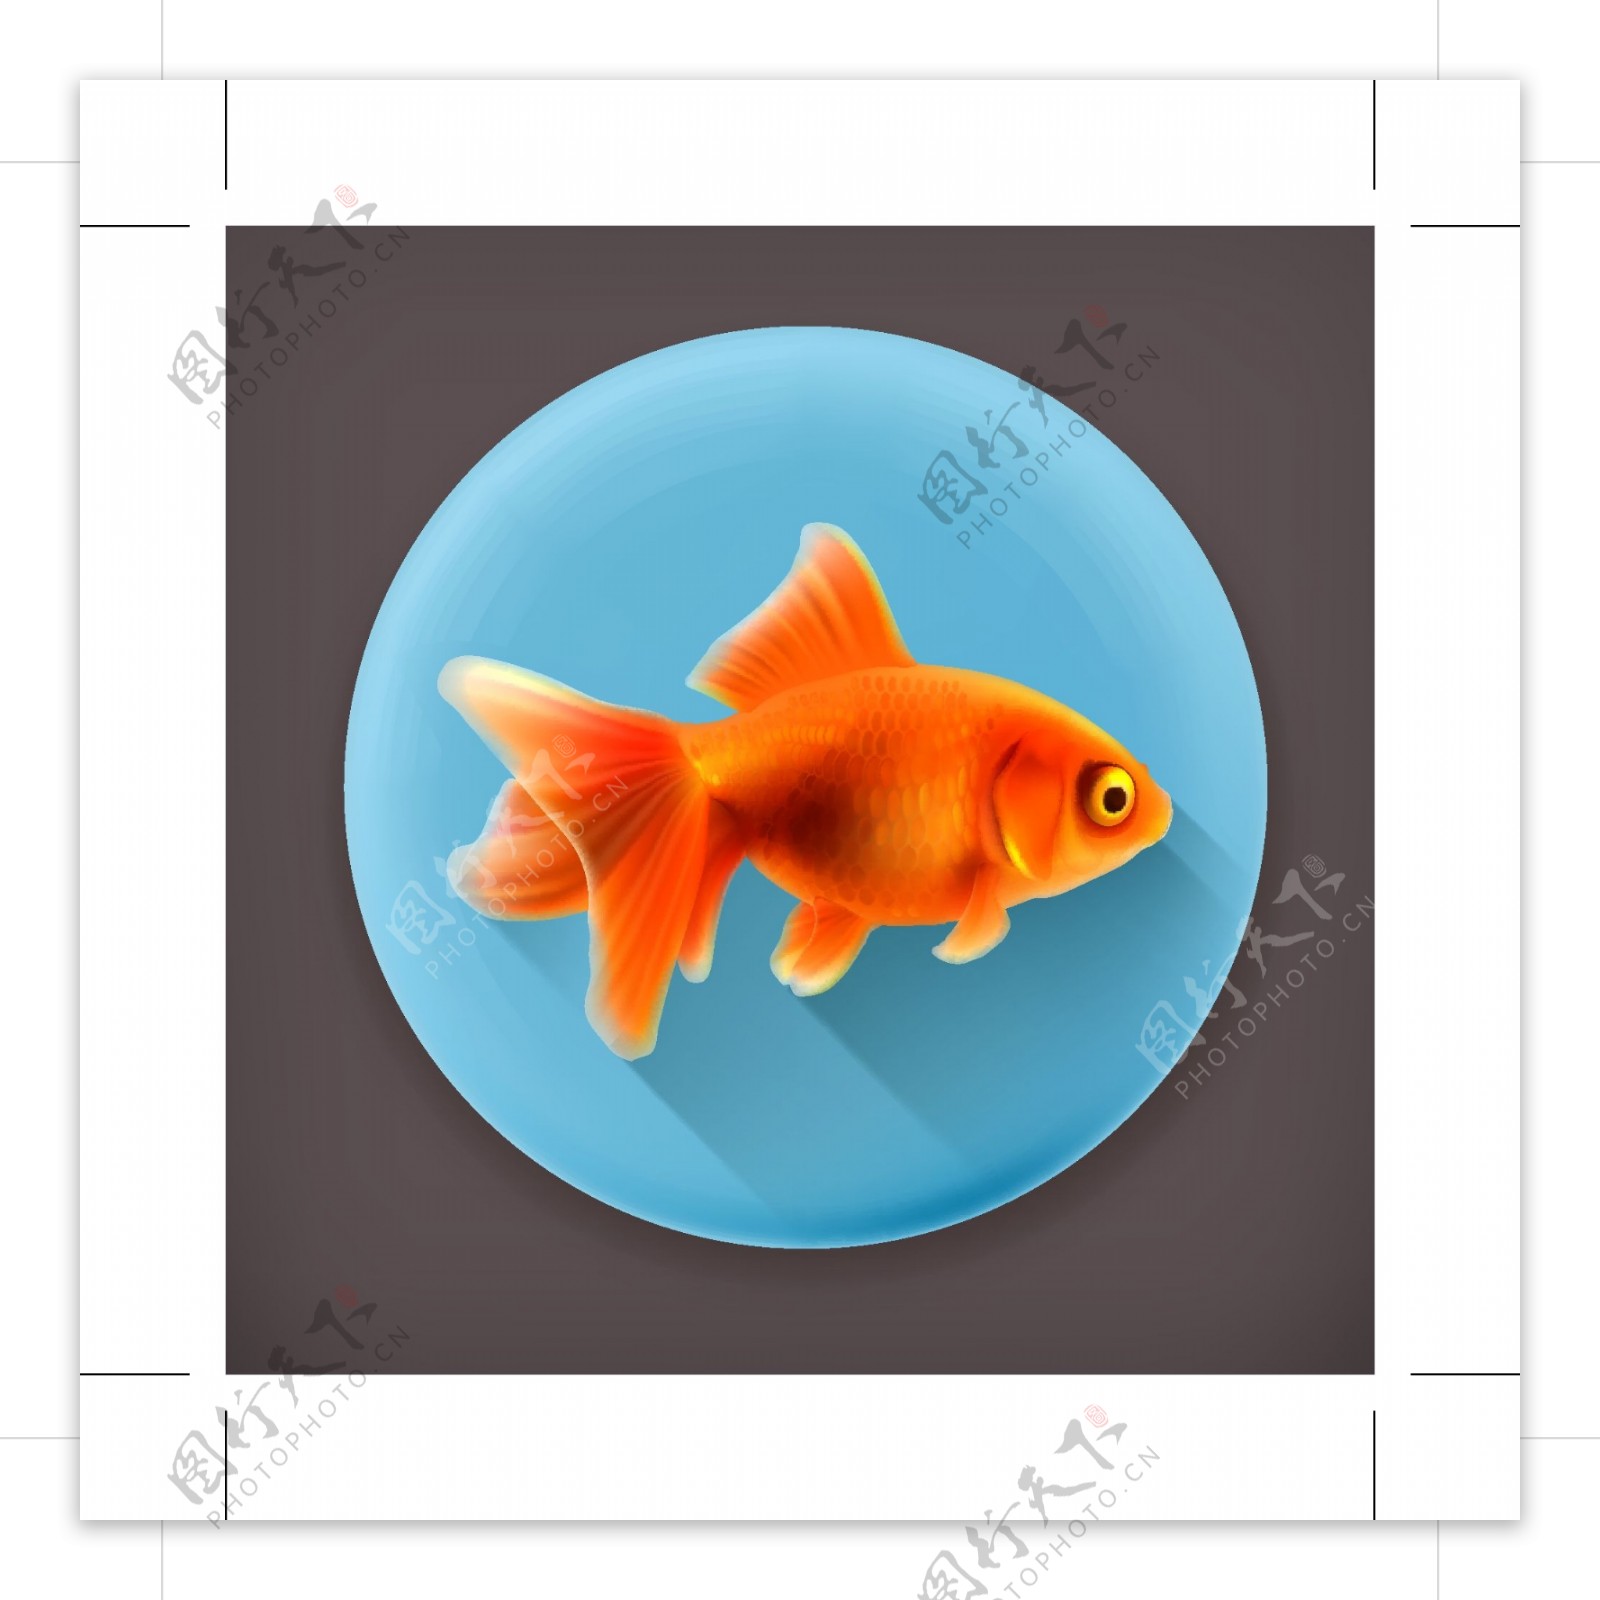 金鱼ICON图标标志图片